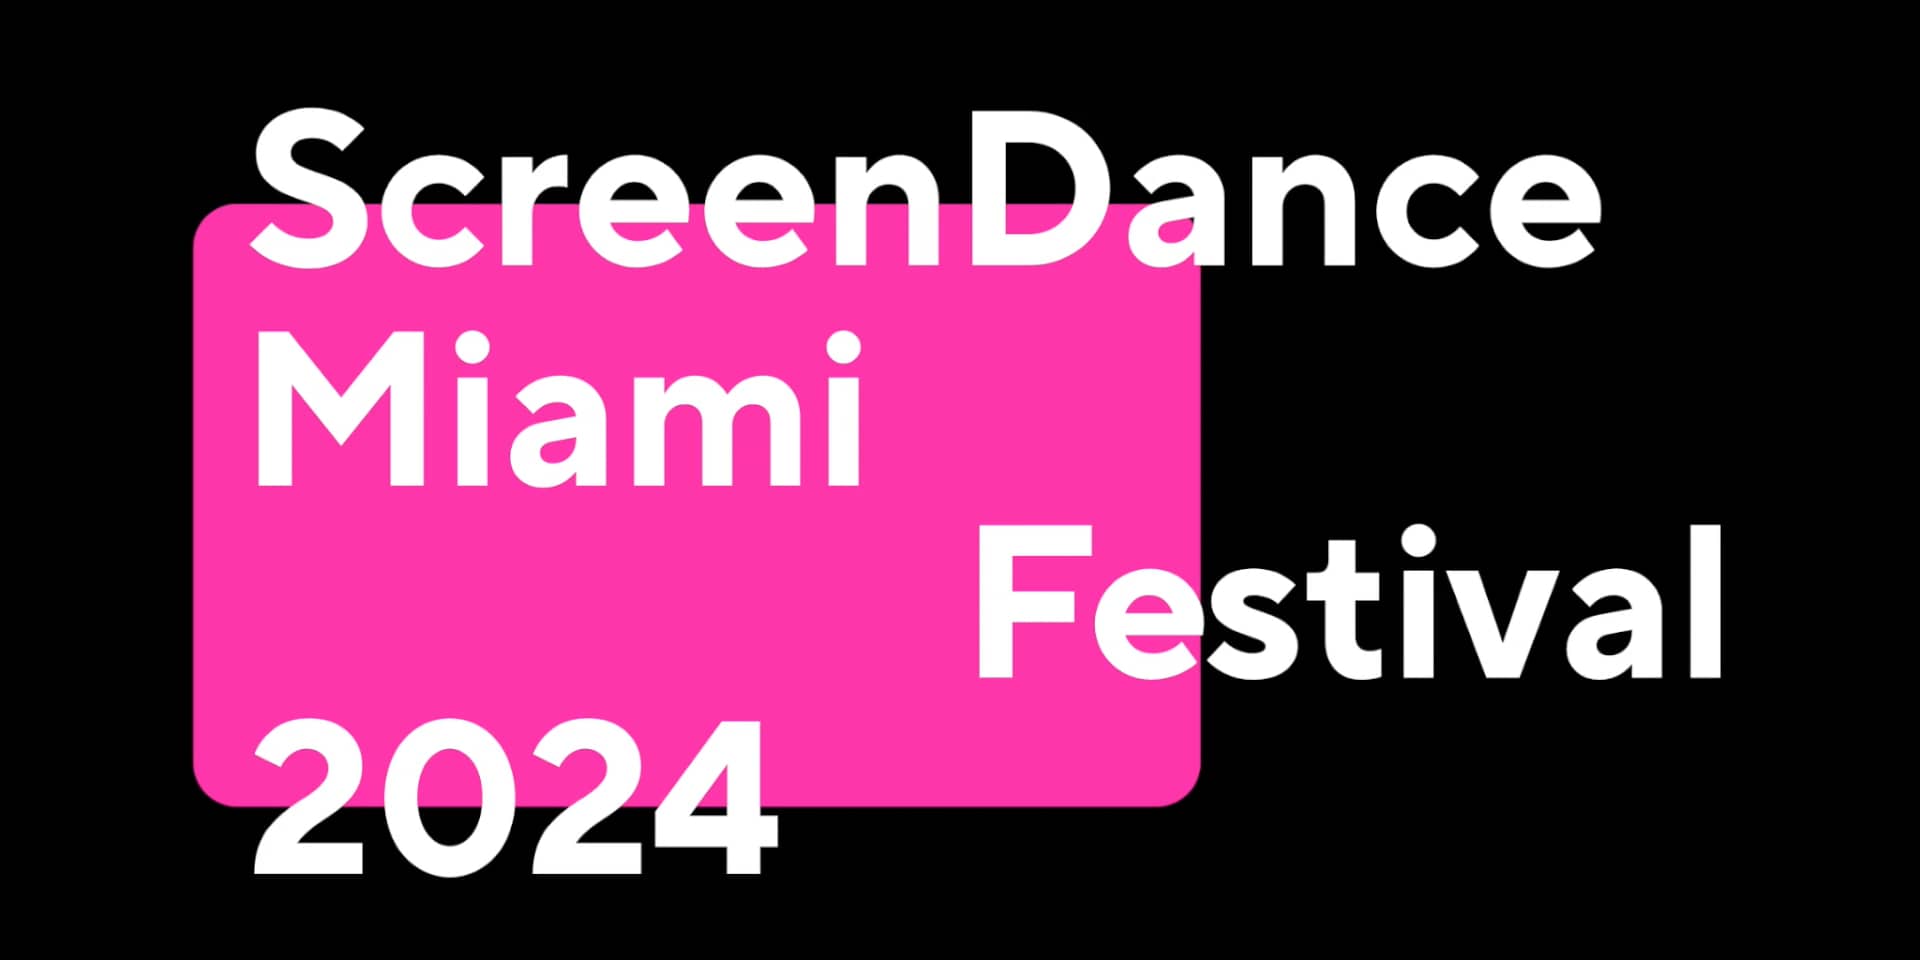 ScreenDance Miami Festival 2024 on Vimeo